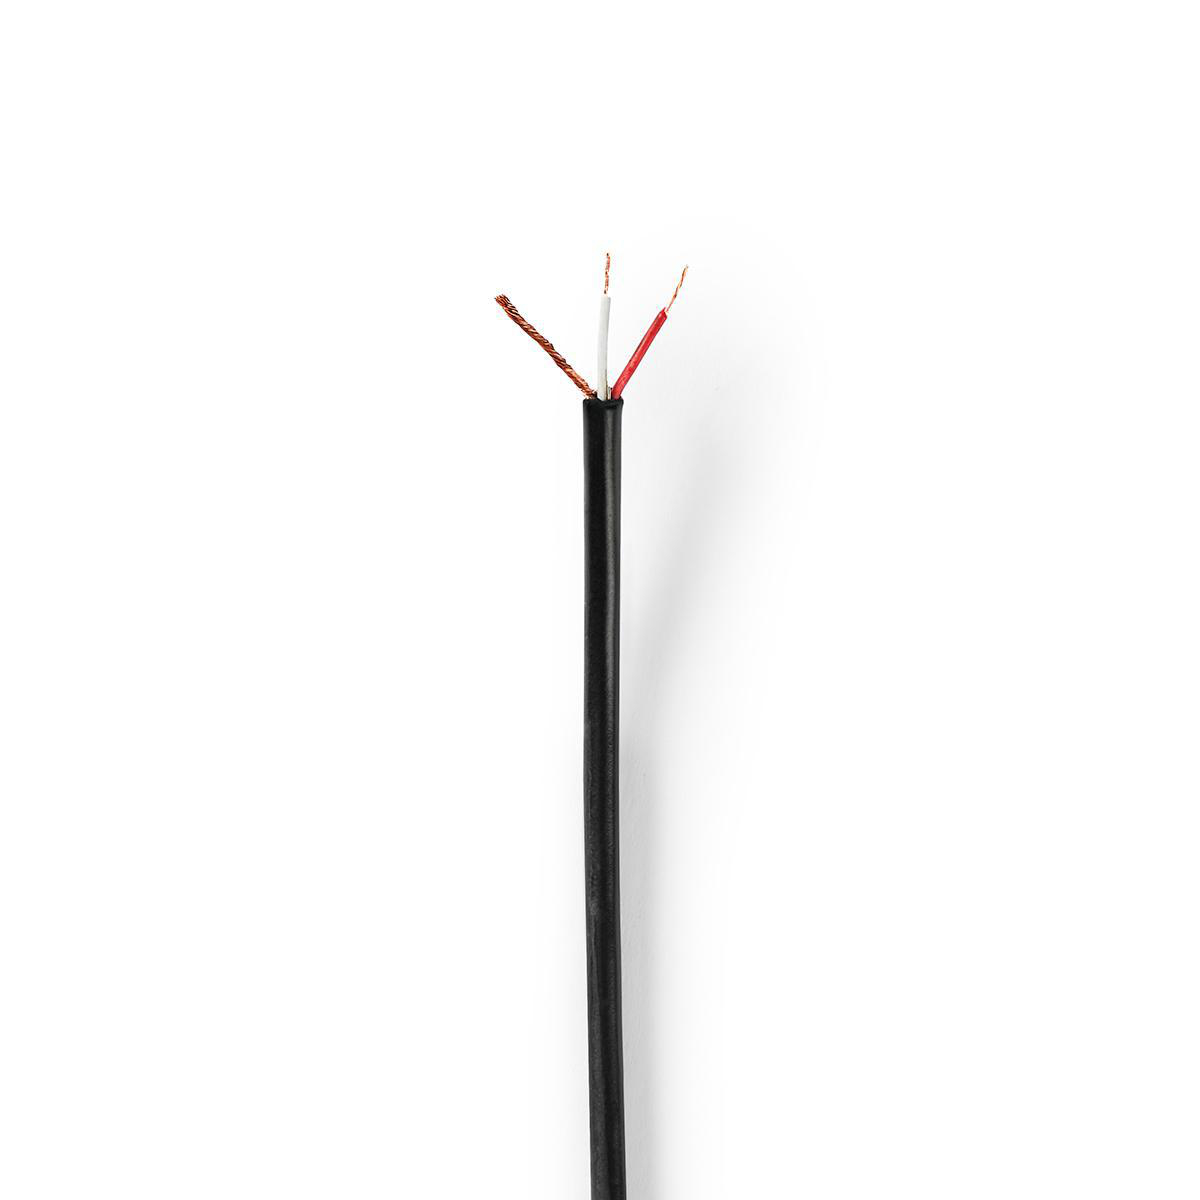 Nedis profi mikrofonní kabel 3 mm, 2 x 0.008 mm měď, černý, 100 m (CABR1508BK1000)